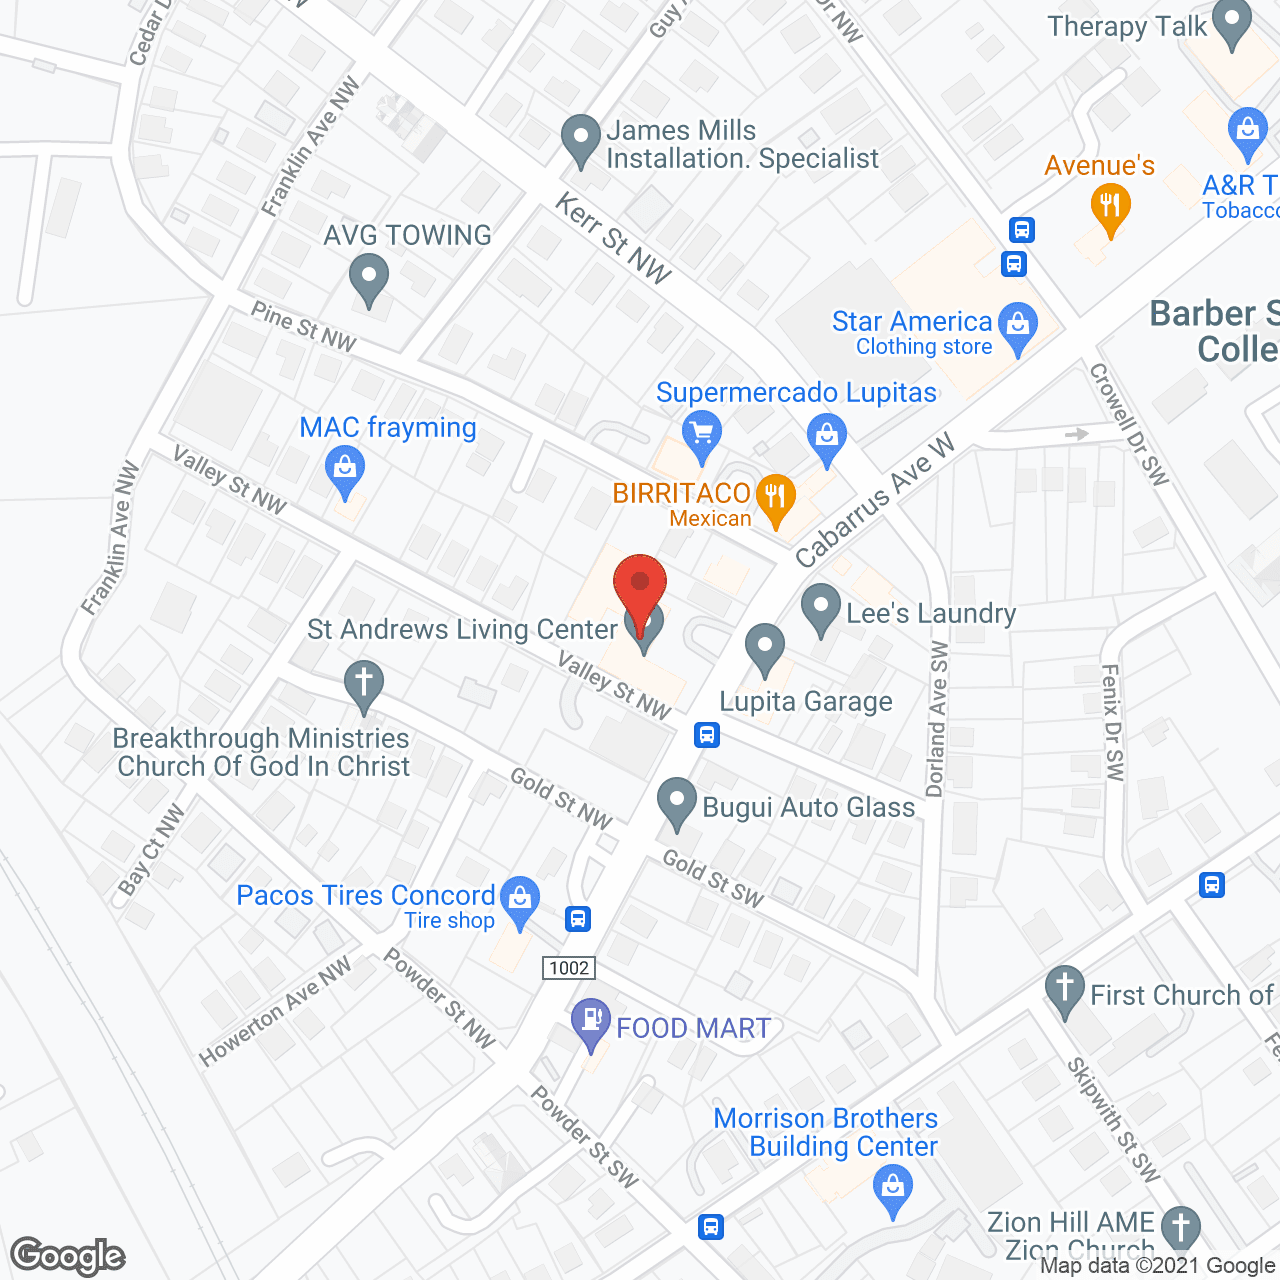 St Andrews Living Center in google map